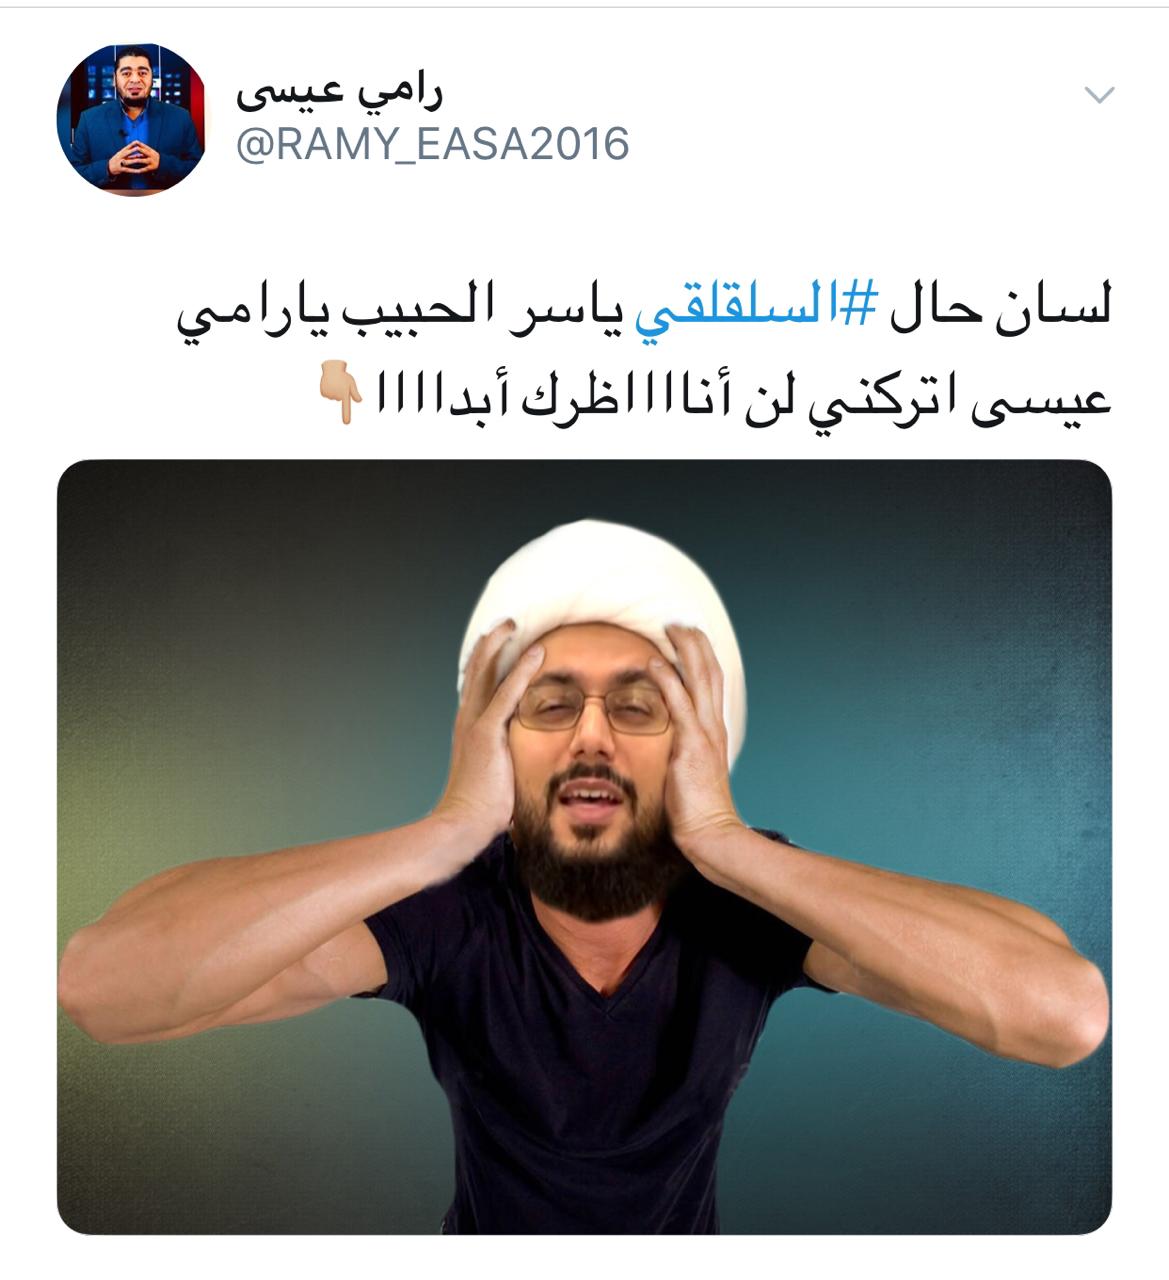 شيعة يشكرون رامي عيسى على تدمير الزنديق ياسر الحبيب.. شاهد